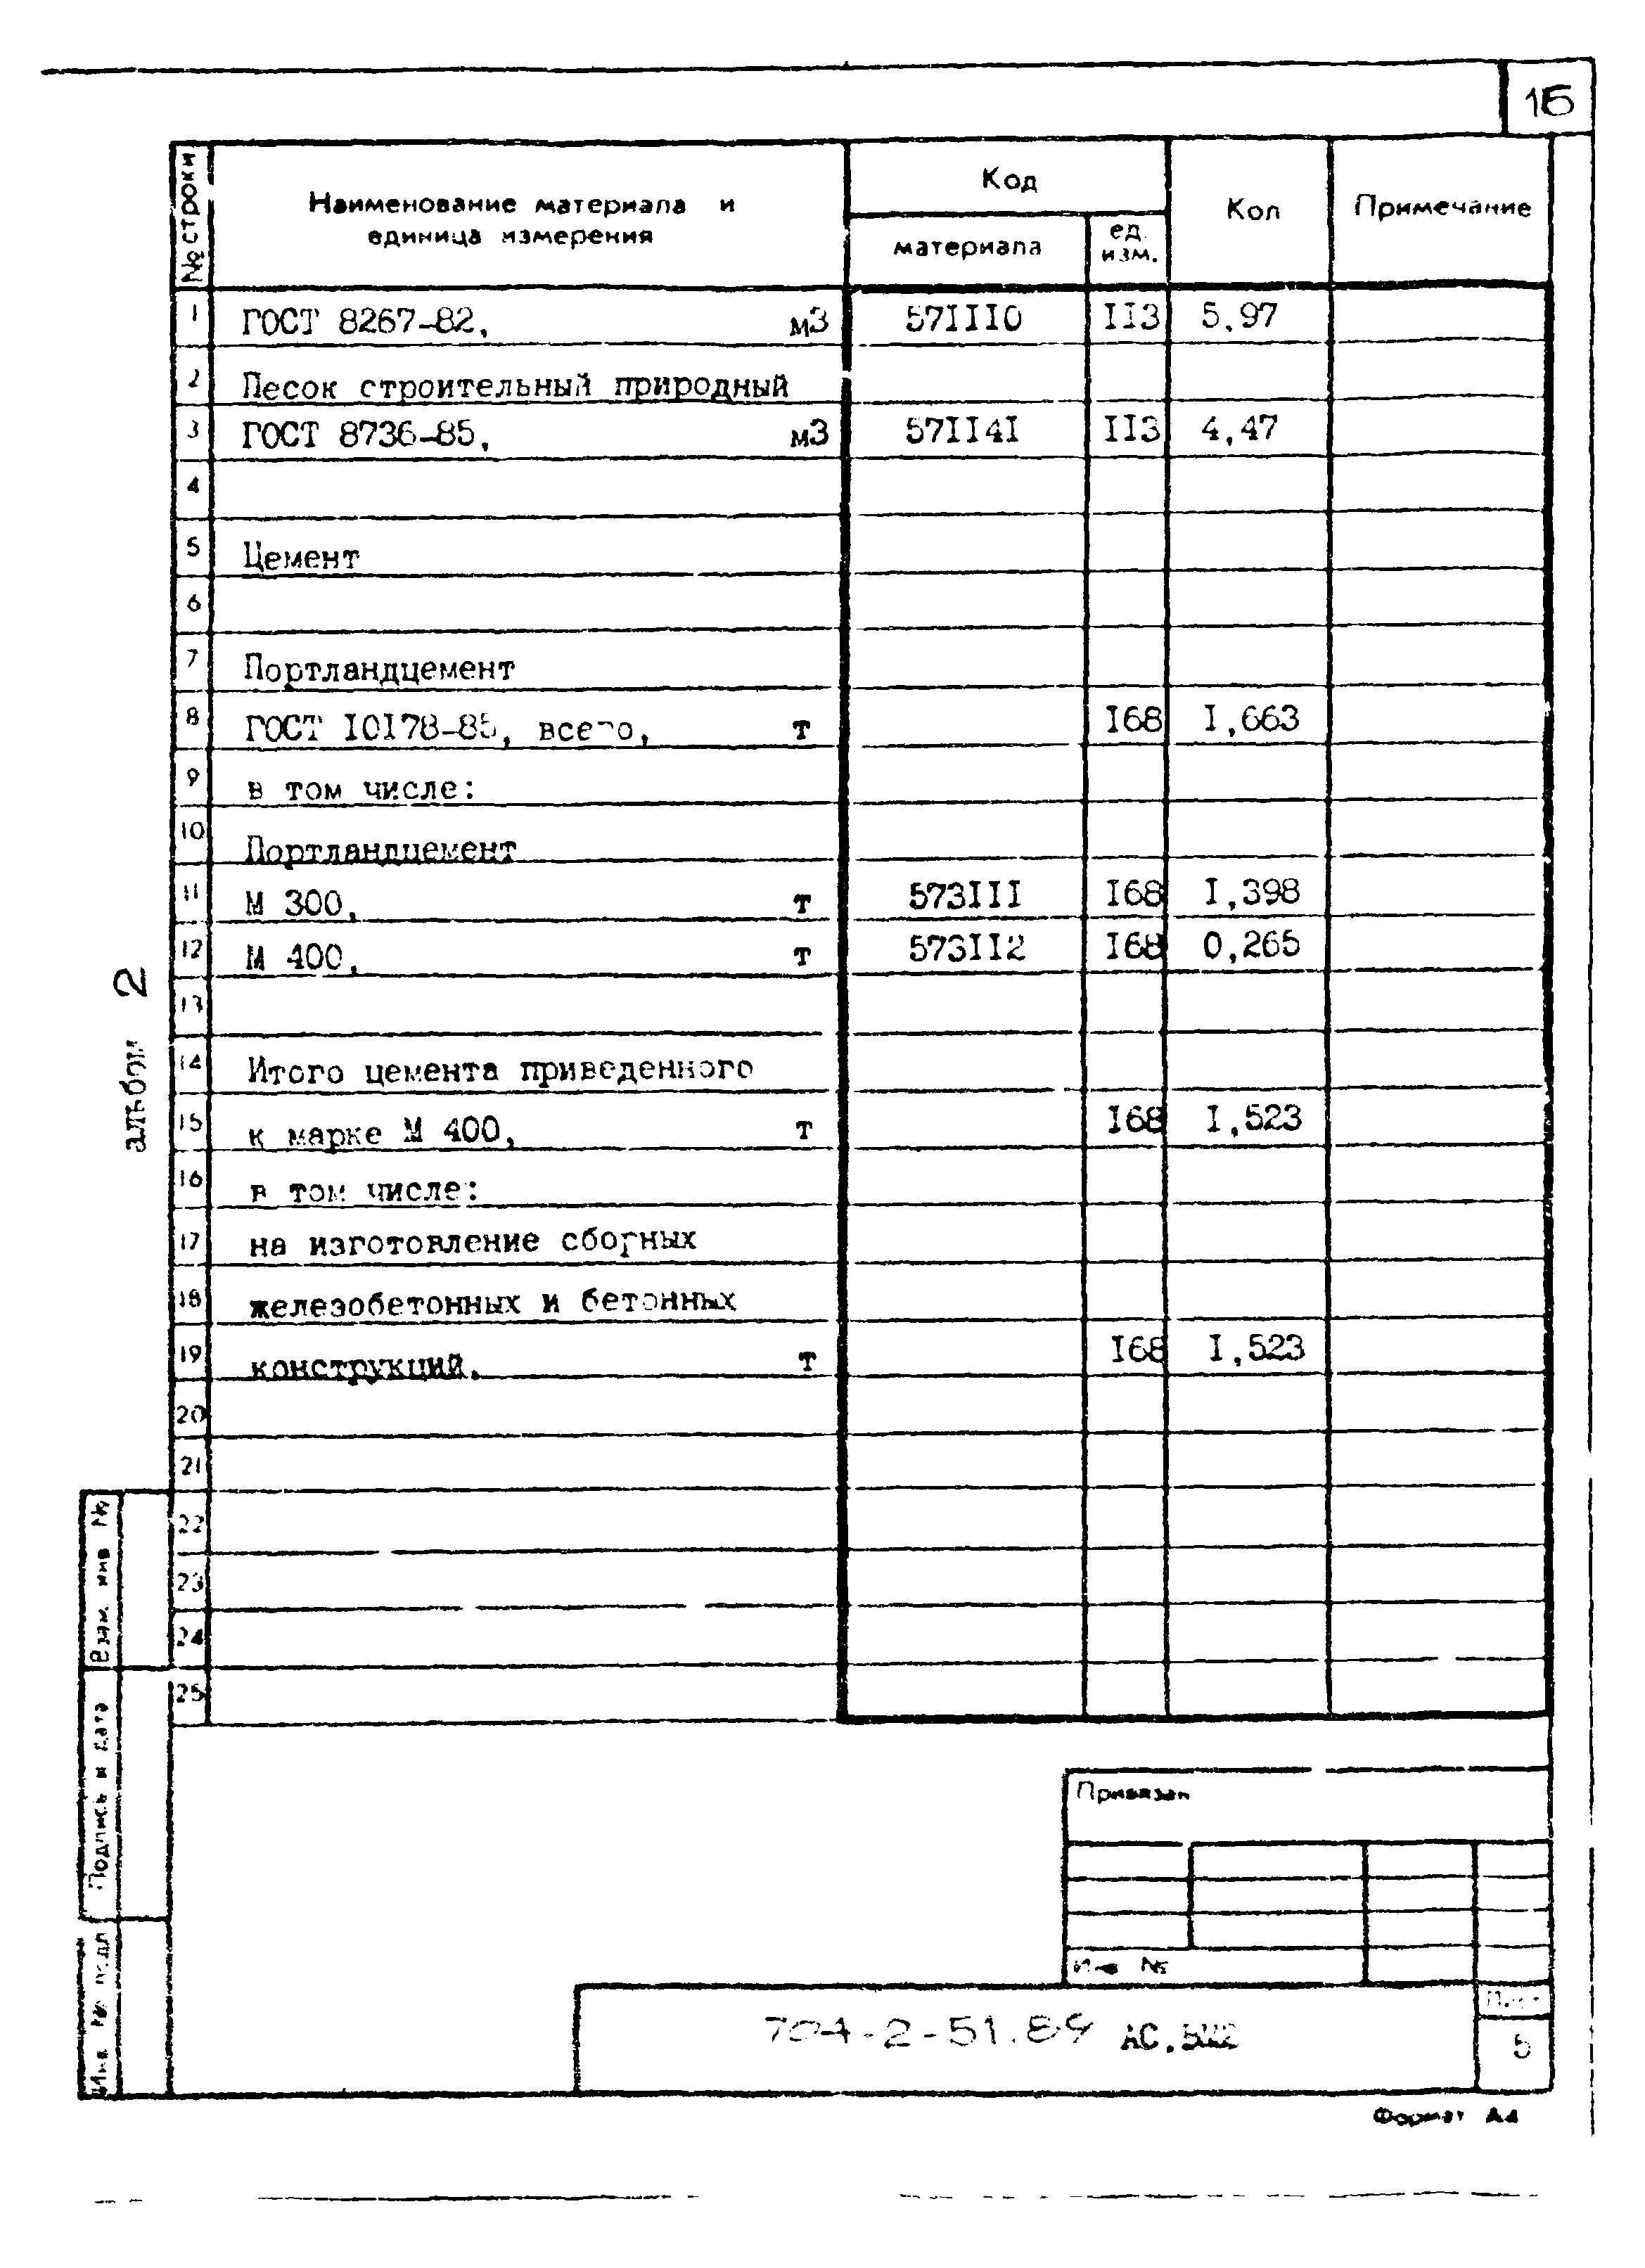 Типовой проект 704-2-51.89